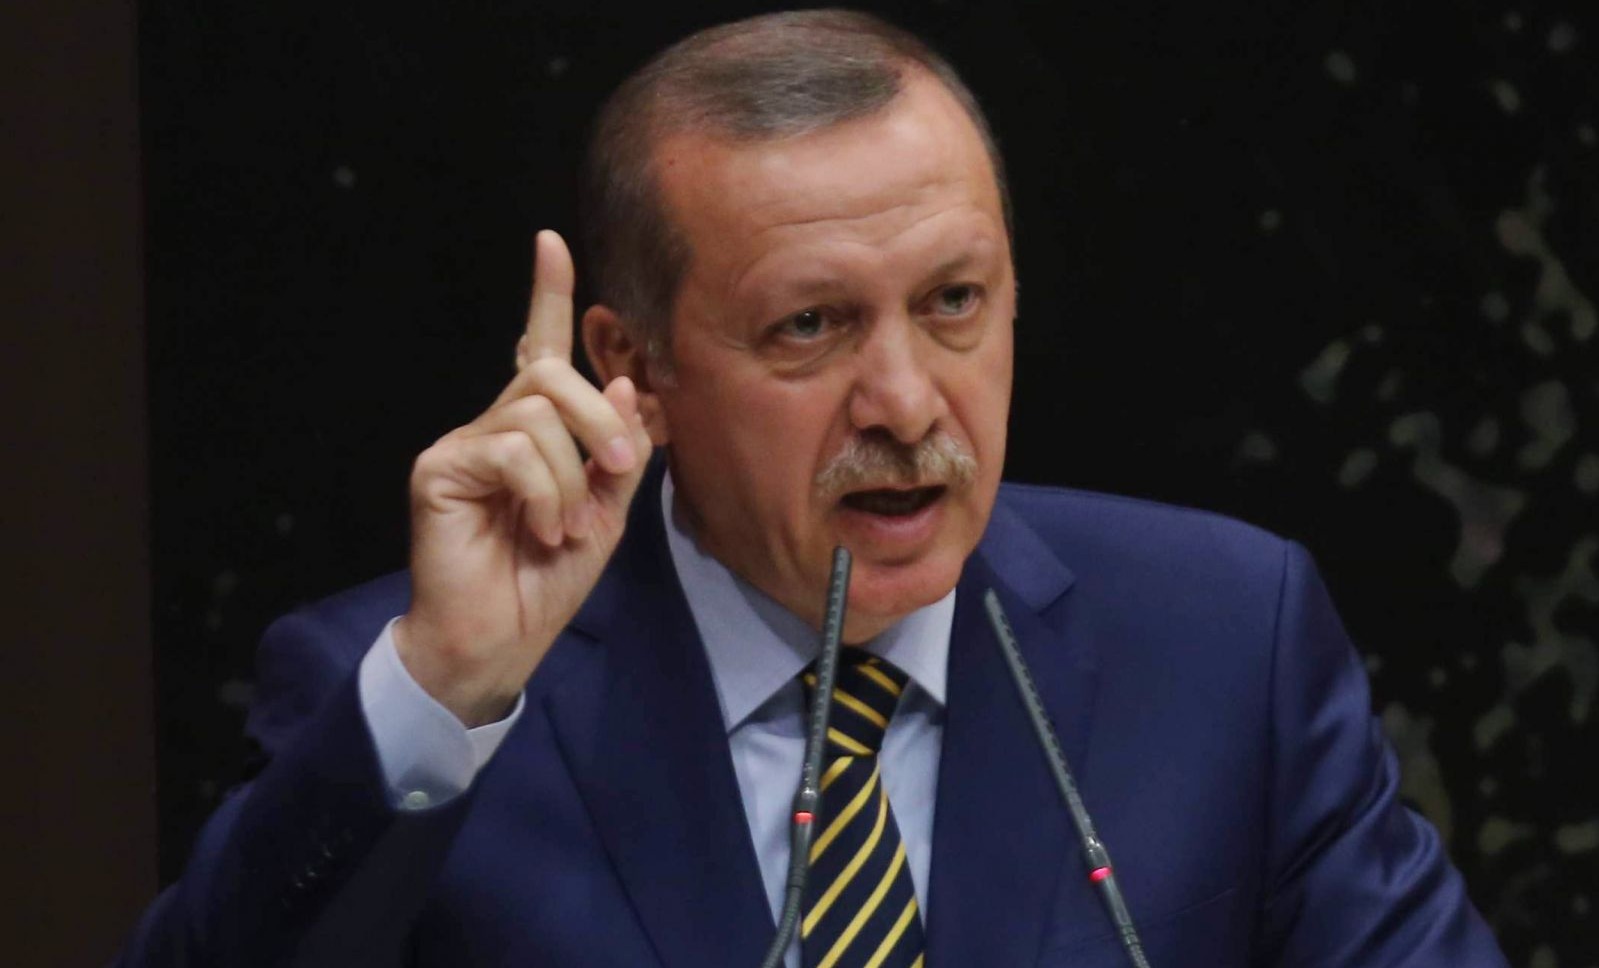   تركيا تعتزم إعادة مليون سوري وتحذر من موجة هجرة جديدة لأوروبا